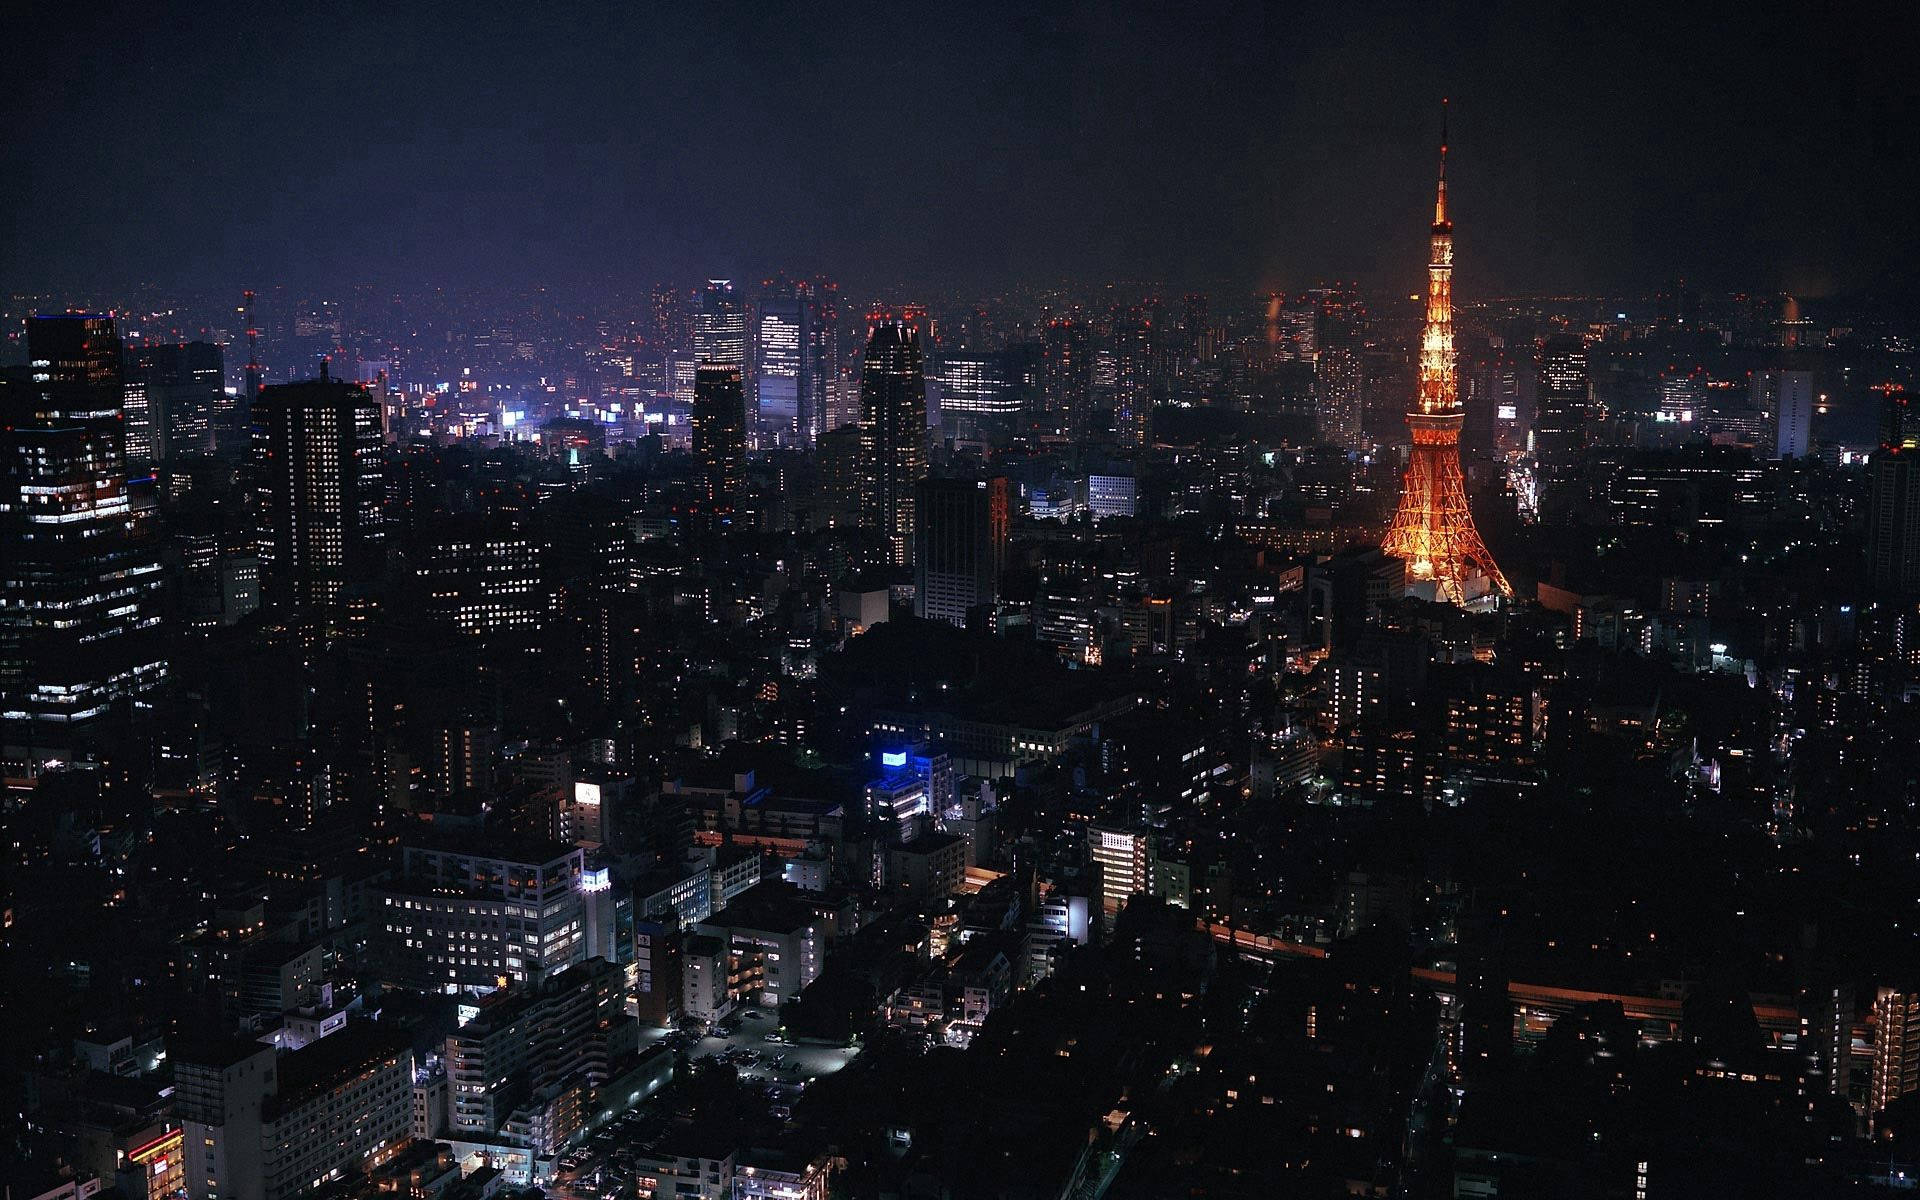 Tokyo Tower At Night Wallpaper